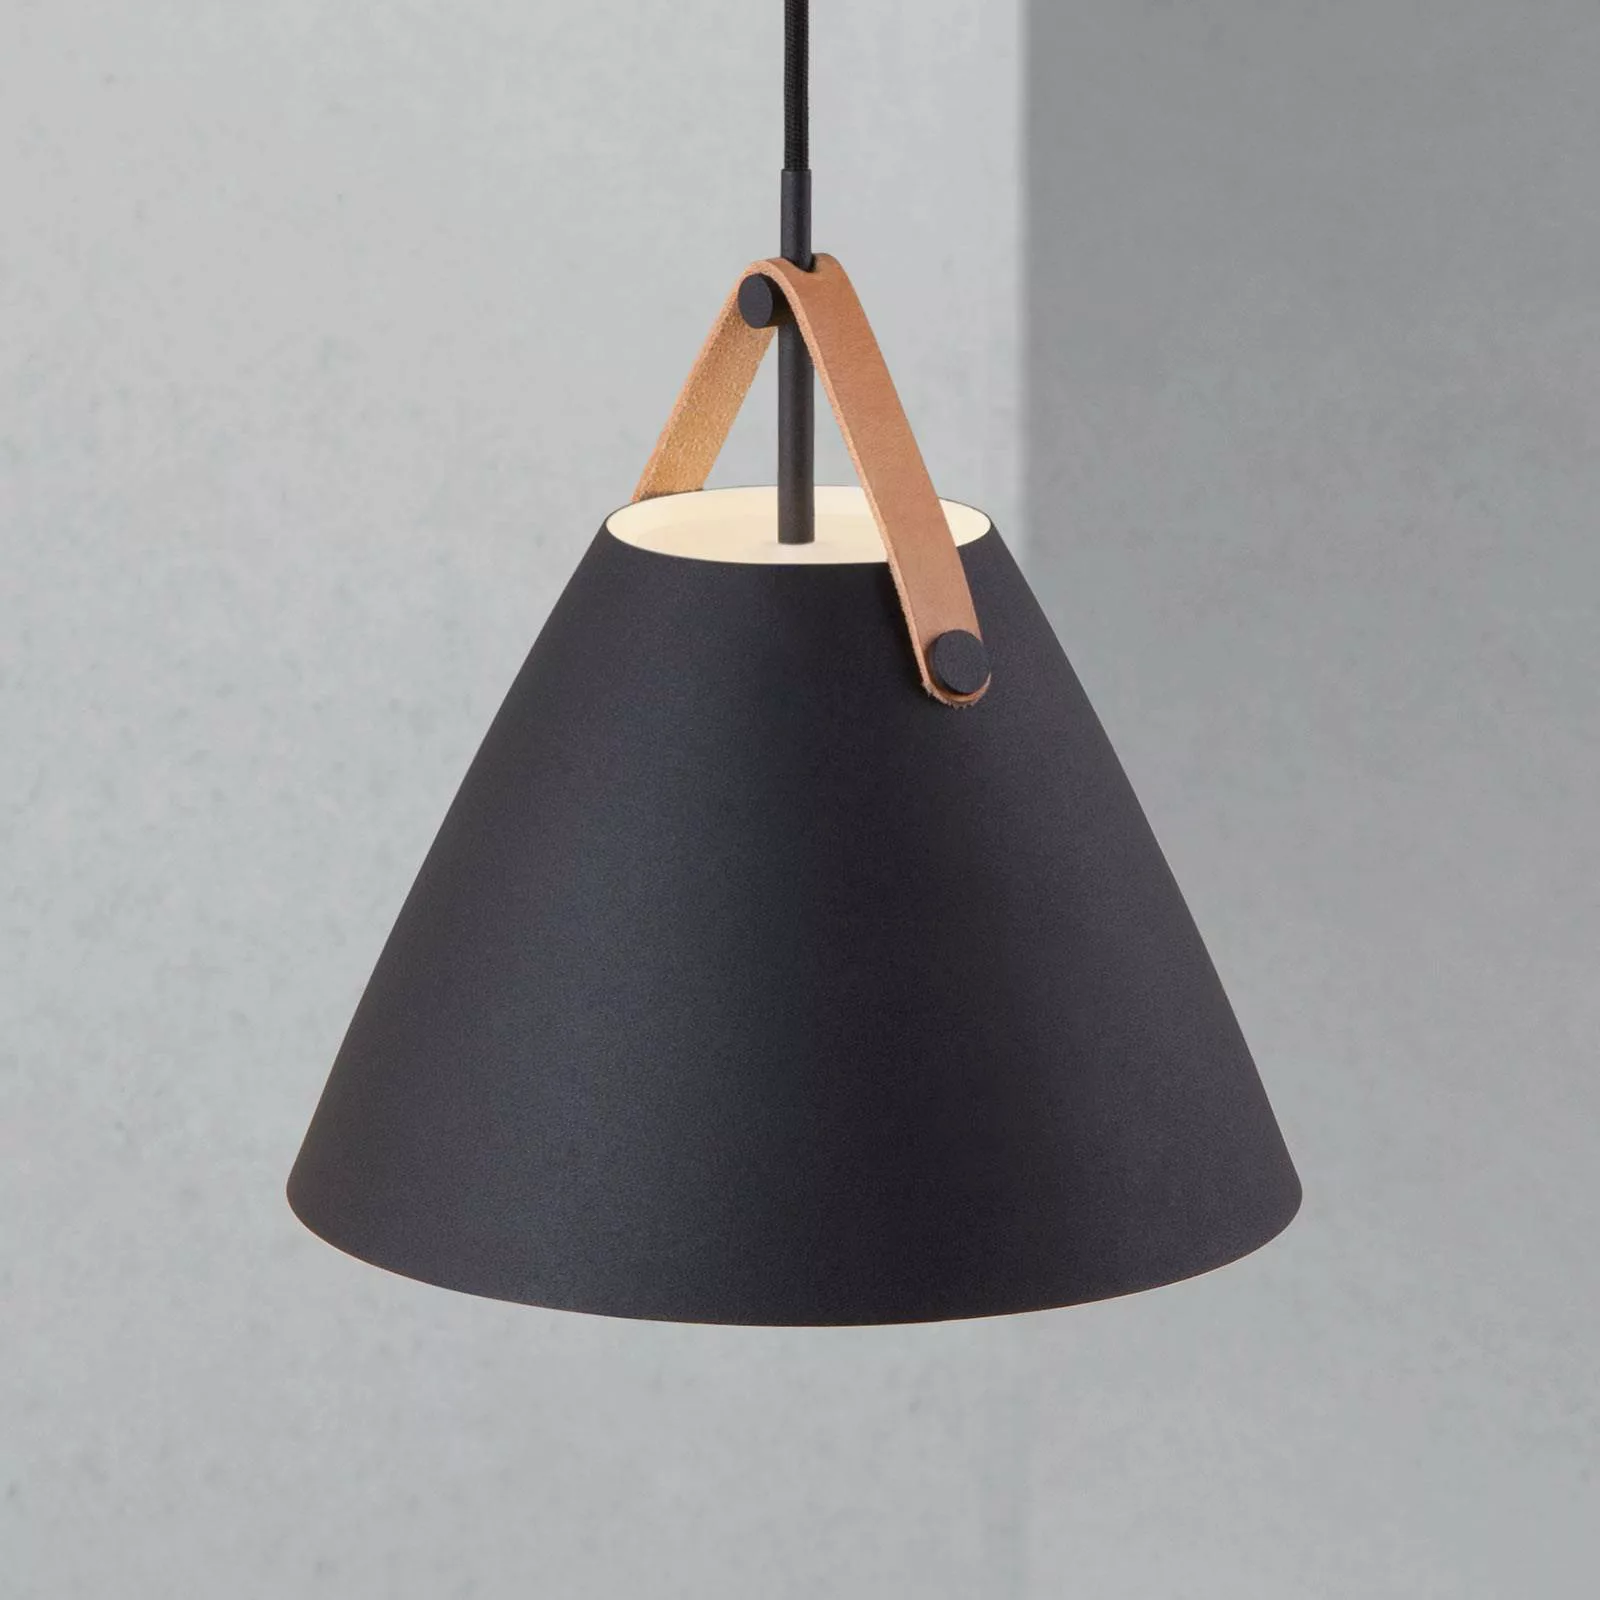 Designer Pendelleuchte Strap 27, E27, schwarz, 270 mm, by Bjorn & Balle günstig online kaufen